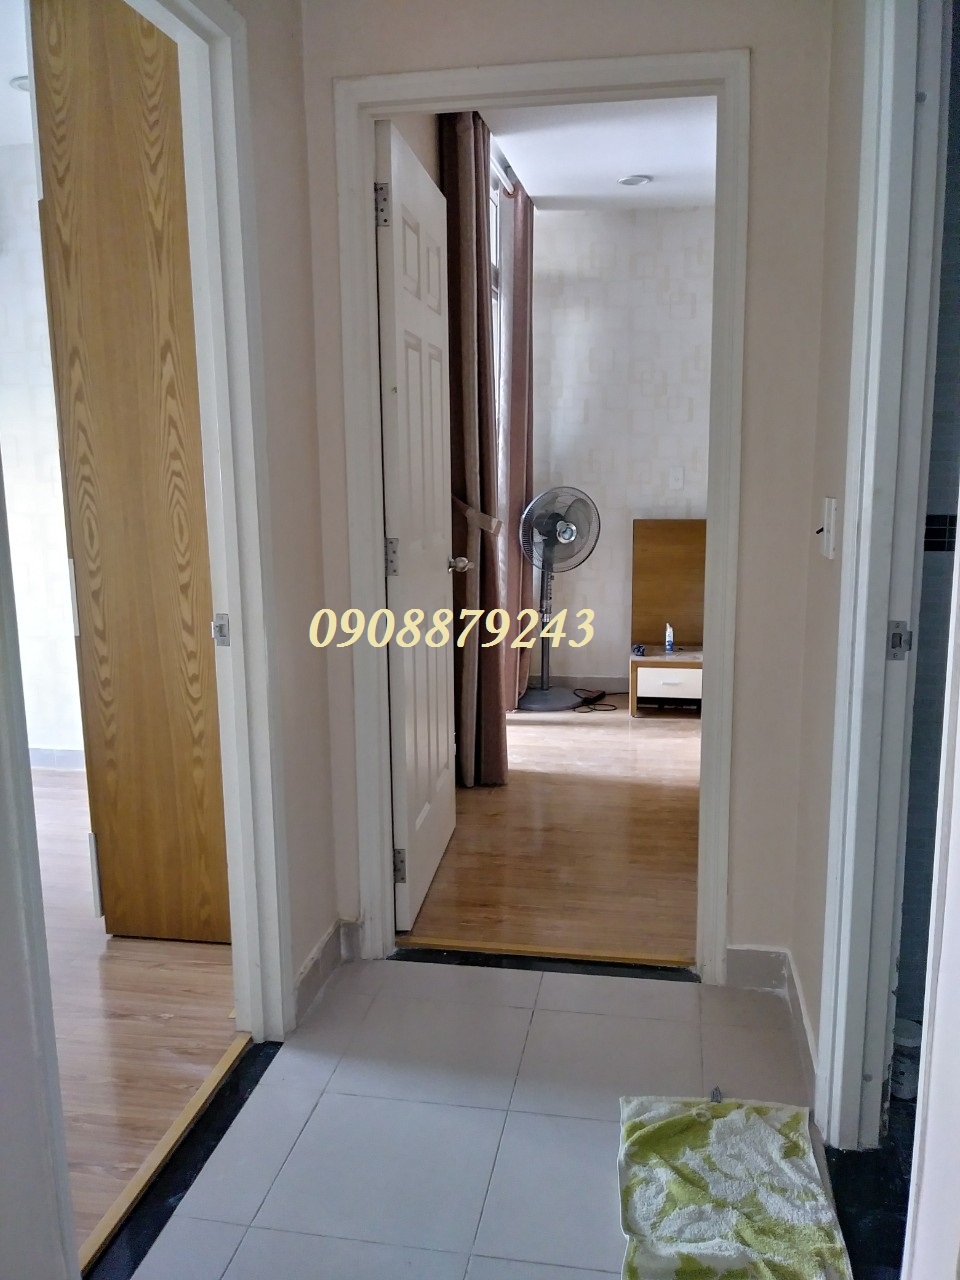 Cho thuê căn hộ Hà Đô NVC - 2PN full nội thất như hình giá 12 tr - 0908879243 Tuấn xem nhà